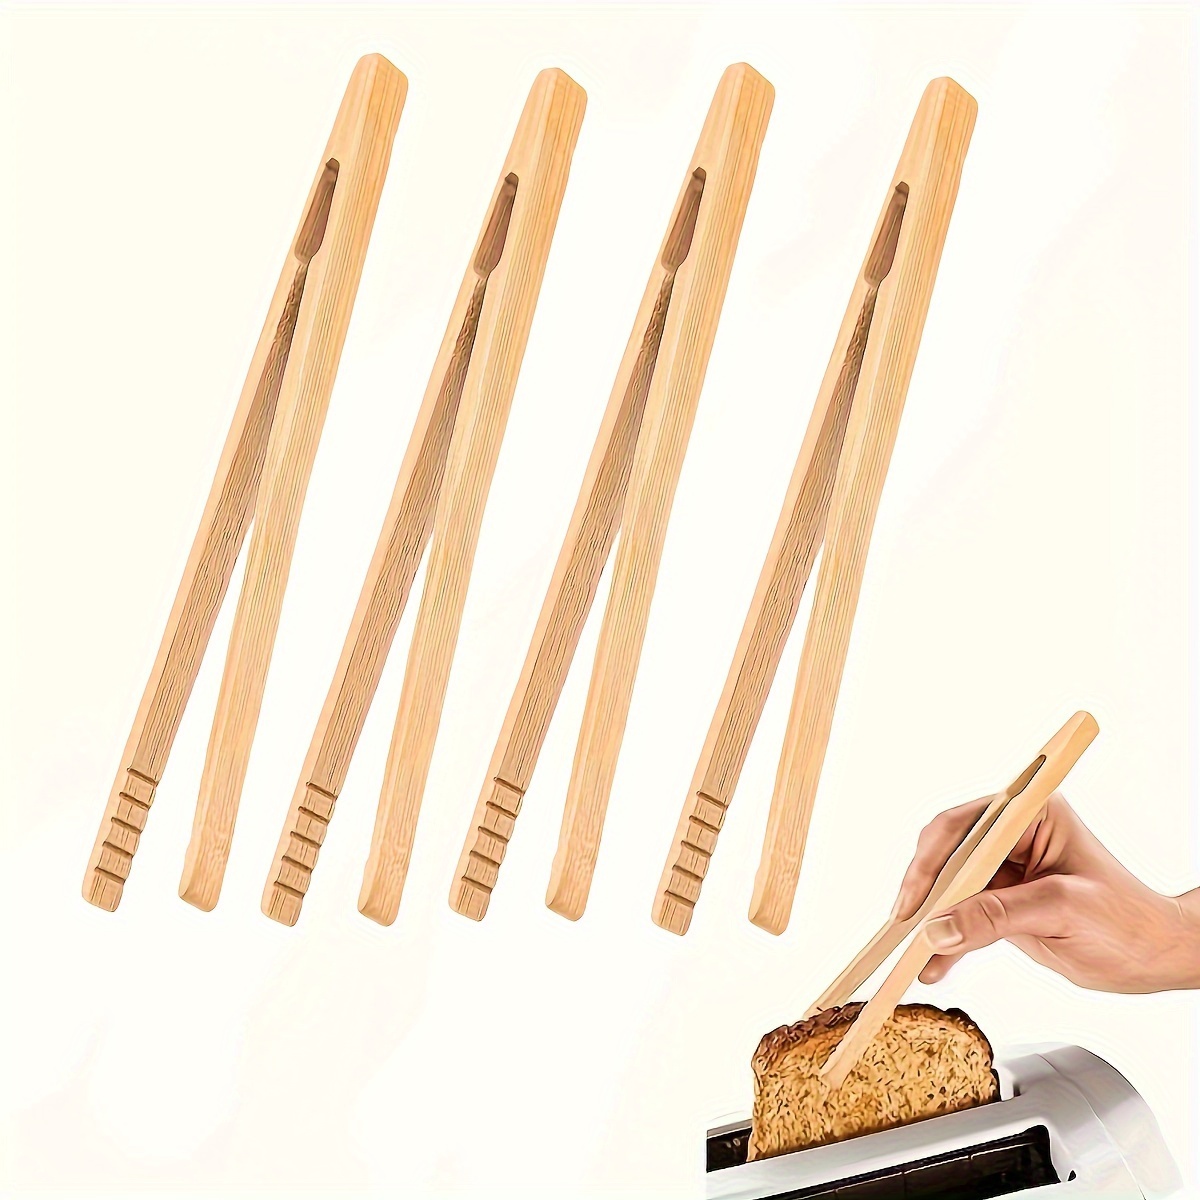 1pc pinces en bois délicates à grille-pain pratiques utiles de